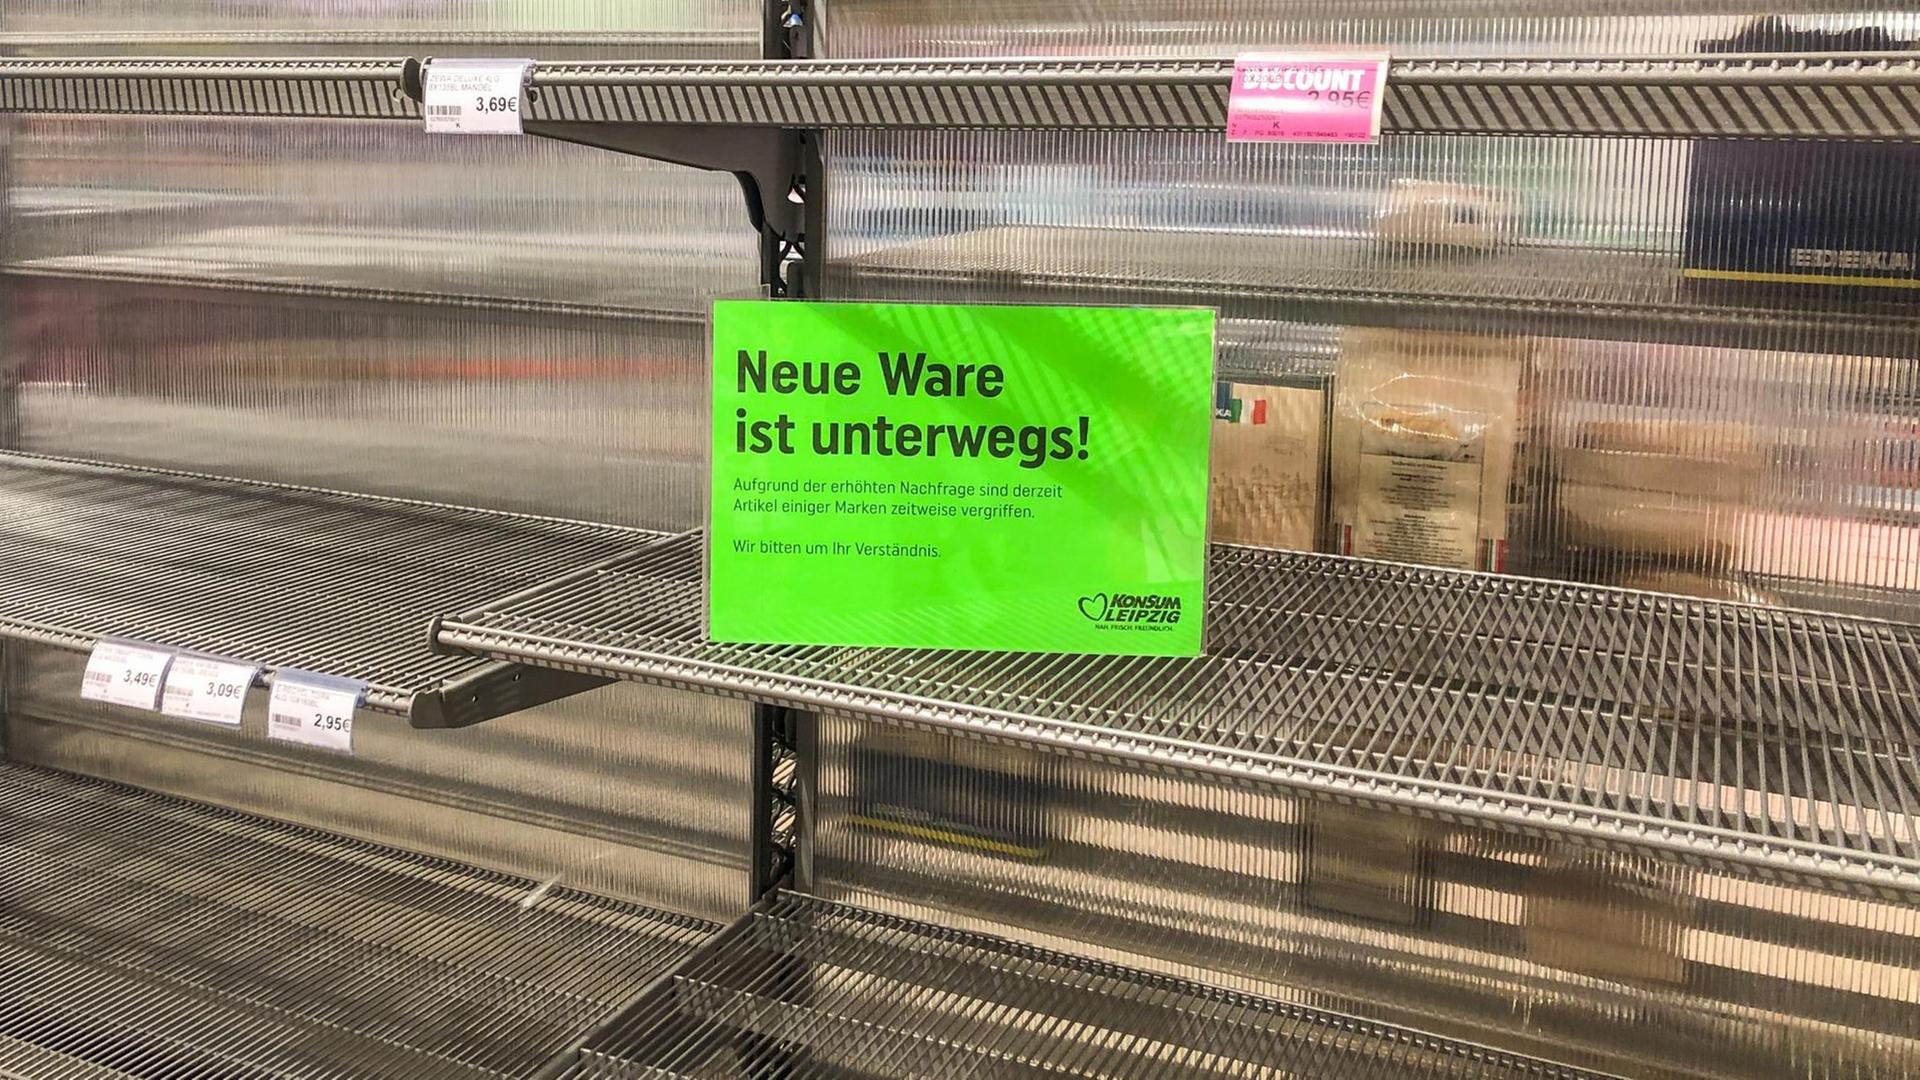 Ein Schild mit der Aufschrift "Neue Ware ist unterwegs!" ist an einem leeren Supermarkt-Regal angebracht, in dem ursprünglich Toilettenpapier stand.